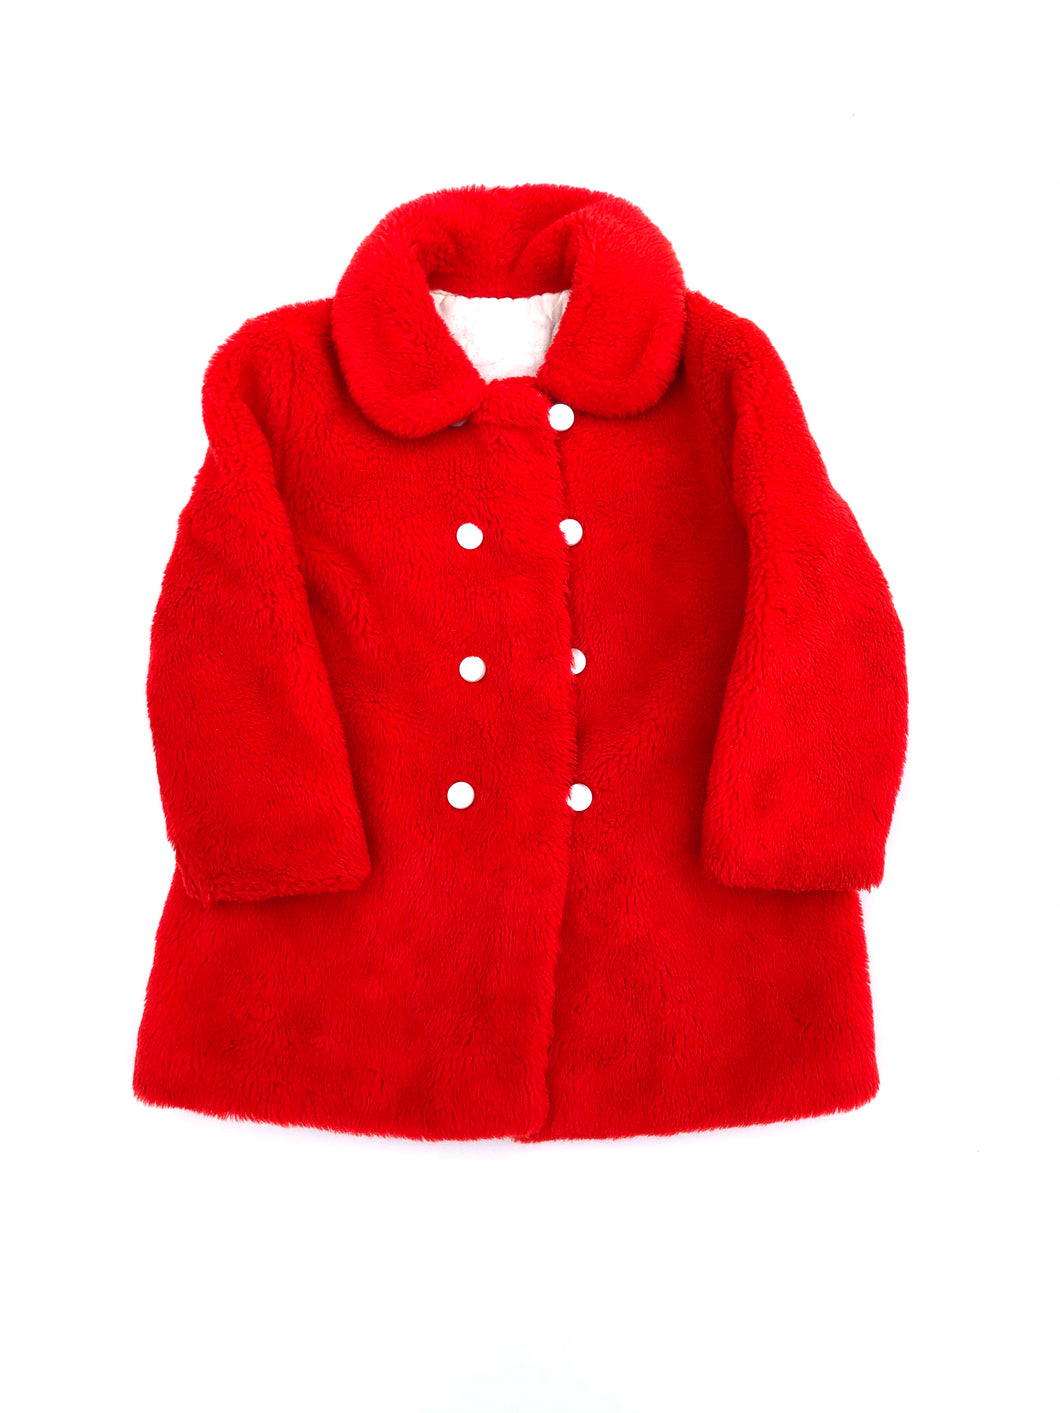 Vintage 60’s Red Teddy Bear Coat 7/8Y